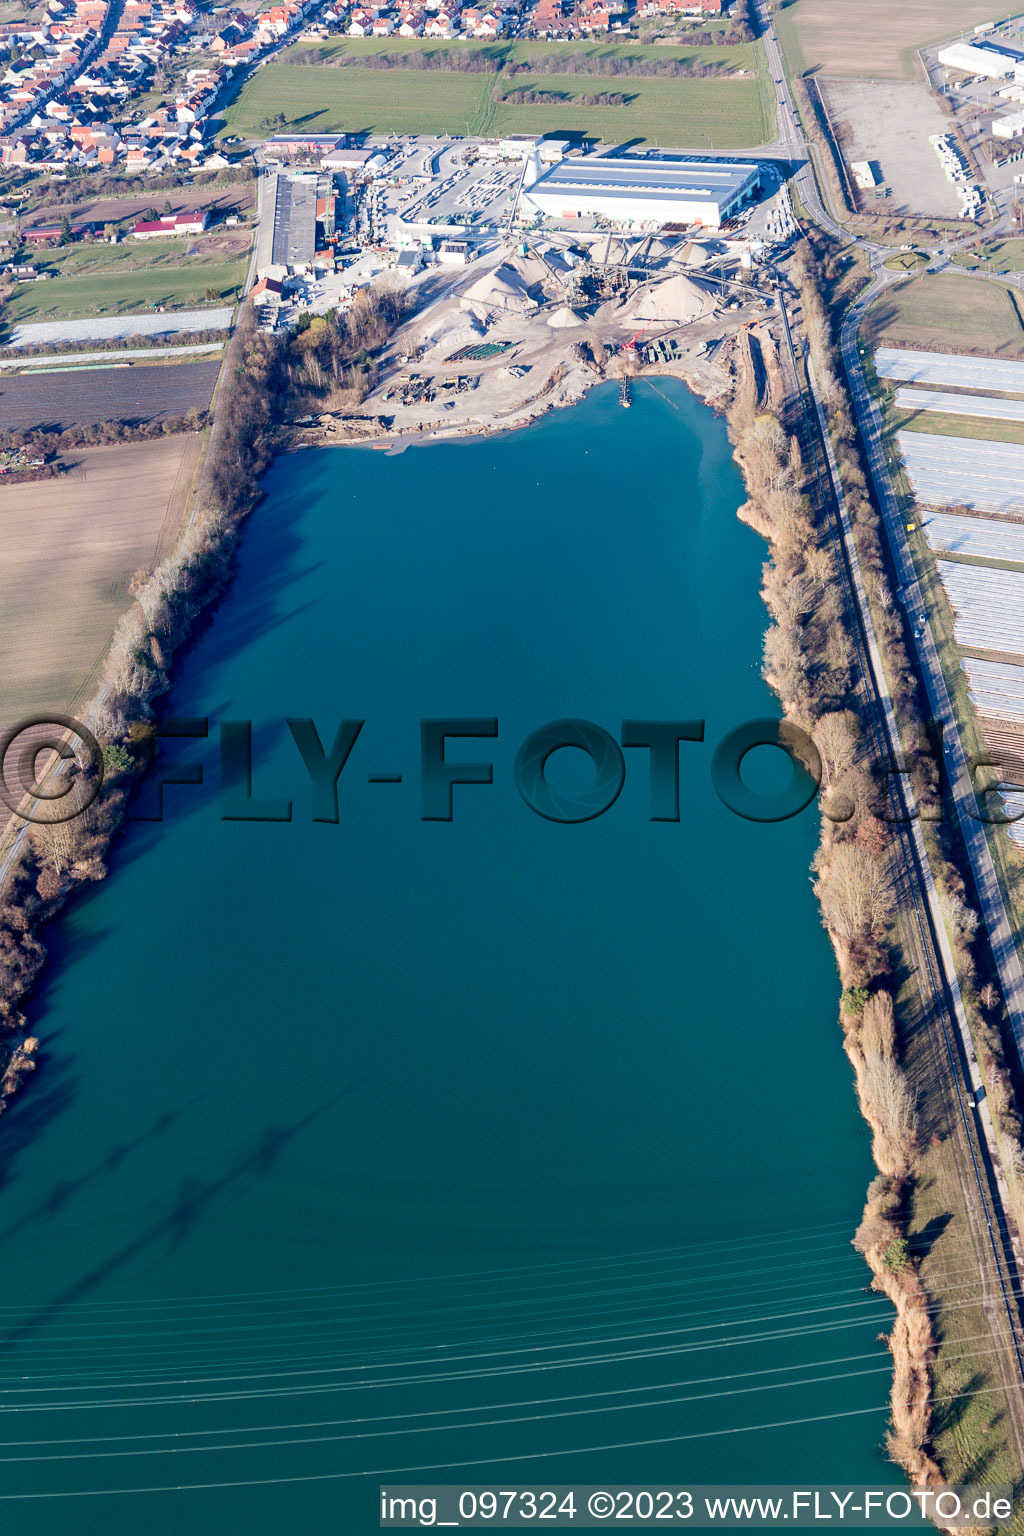 Hambrücken im Bundesland Baden-Württemberg, Deutschland von der Drohne aus gesehen